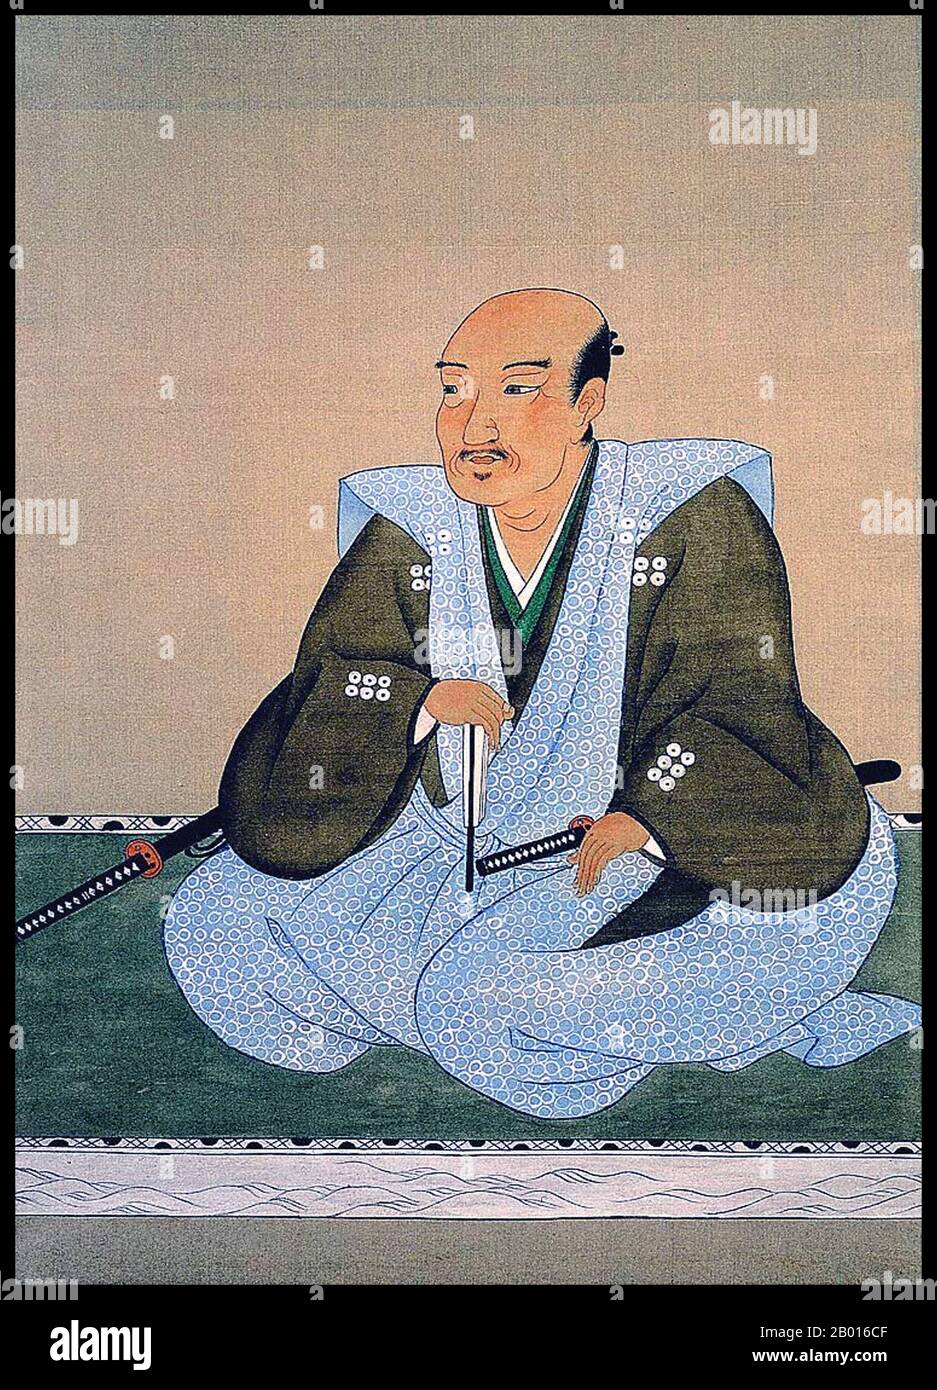 Japan: Sanada Yukimura (1567. - 3. Juni 1615), Samurai-General der Sengoku-Zeit. Hängende Schriftrolle, Edo-Periode. Sanada Yukimura, richtiger Name Nobushige, war ein legendärer Samurai aus der Sengoku-Zeit. Der Sanada-Clan driftete zunächst zwischen den stärkeren Daimyos, bevor er Vasall von Toyotomi Hideyoshi wurde. Yukimura wandte sich jedoch kurz vor der Schlacht von Sekigahara im Jahr 1600 gegen den Verbündeten Tokugawa Ieyasu von Hideyoshi. Er wurde nach Mt. Koya wegen seines Verrats, trotzte aber weiterhin den Tokugawas und wurde ein General für die Verteidiger während der Belagerung von Osaka von 1614-1615, wo er starb. Stockfoto